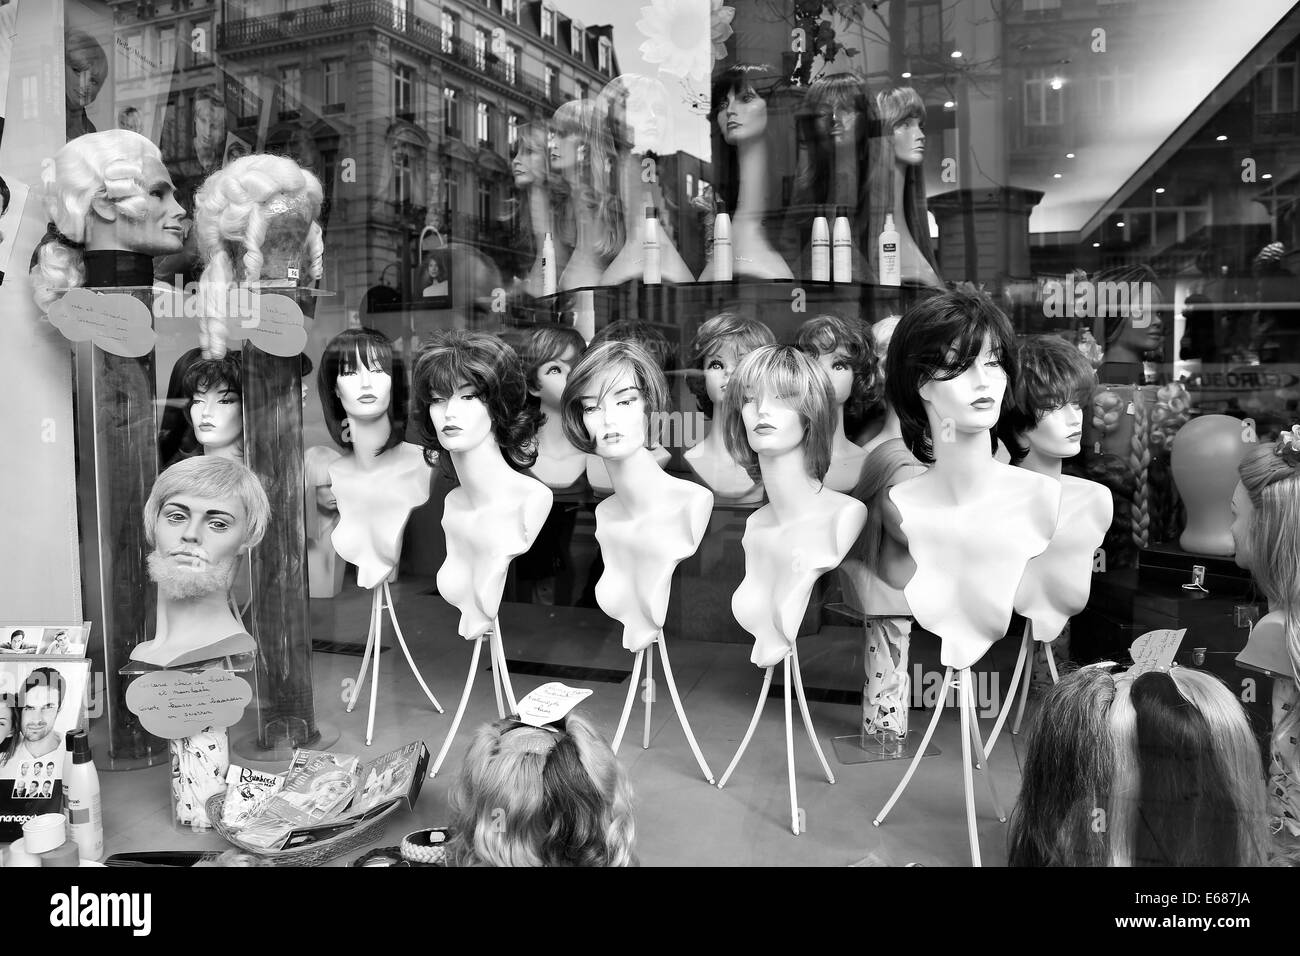 Schaufenster in Brüssel, Manniquins mit Perücken auf. Schwarz / weiß Bild. Stockfoto